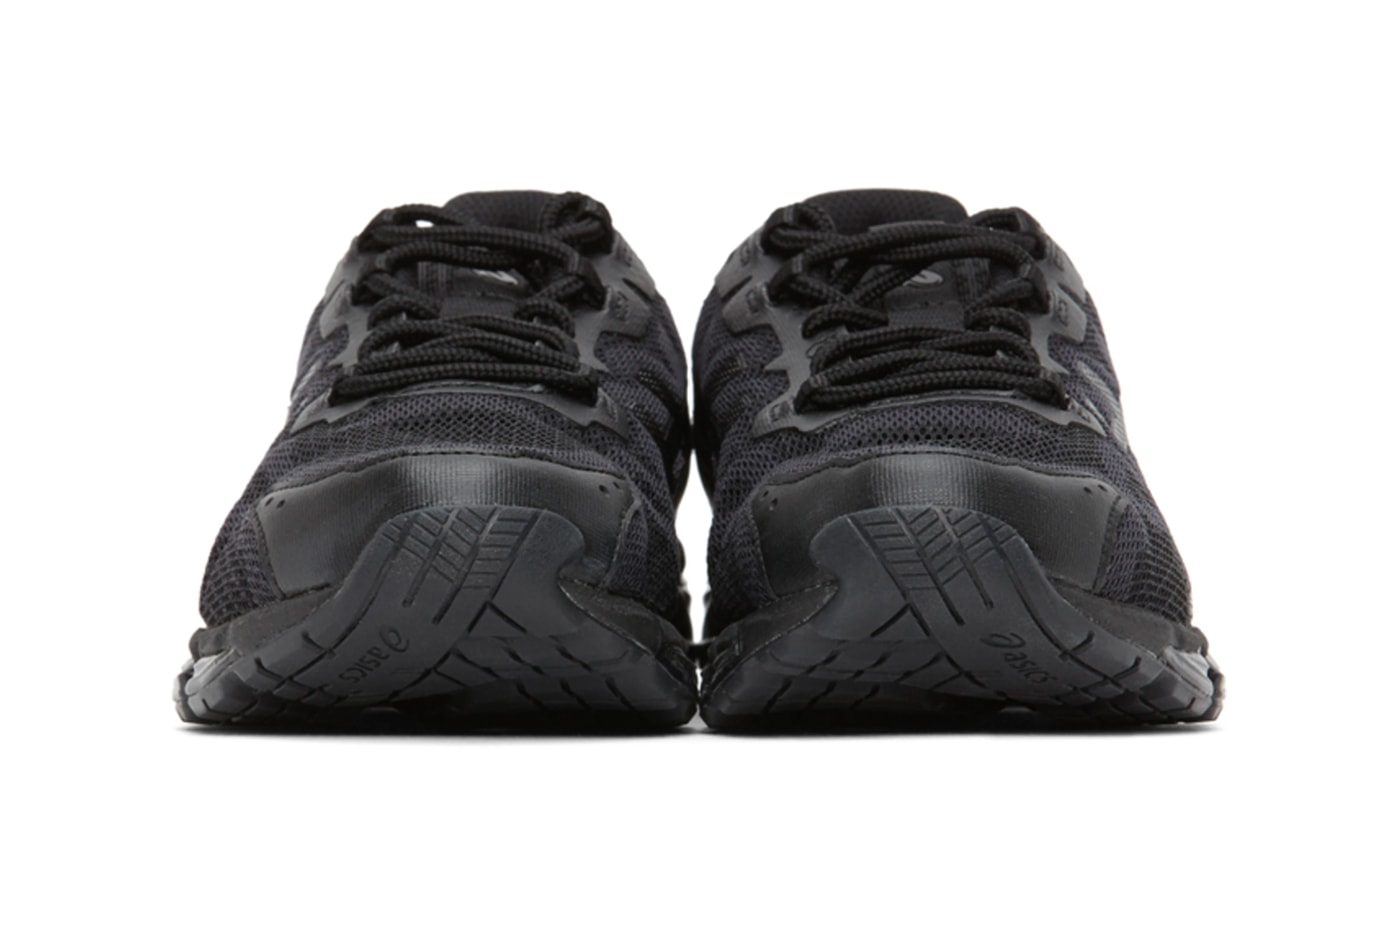 Asics Black GEL-Quantum 360 6 Sneakers Release  shoes footwear black monochrome kicks sneakers trainers running japan Japanese footwear Gel  